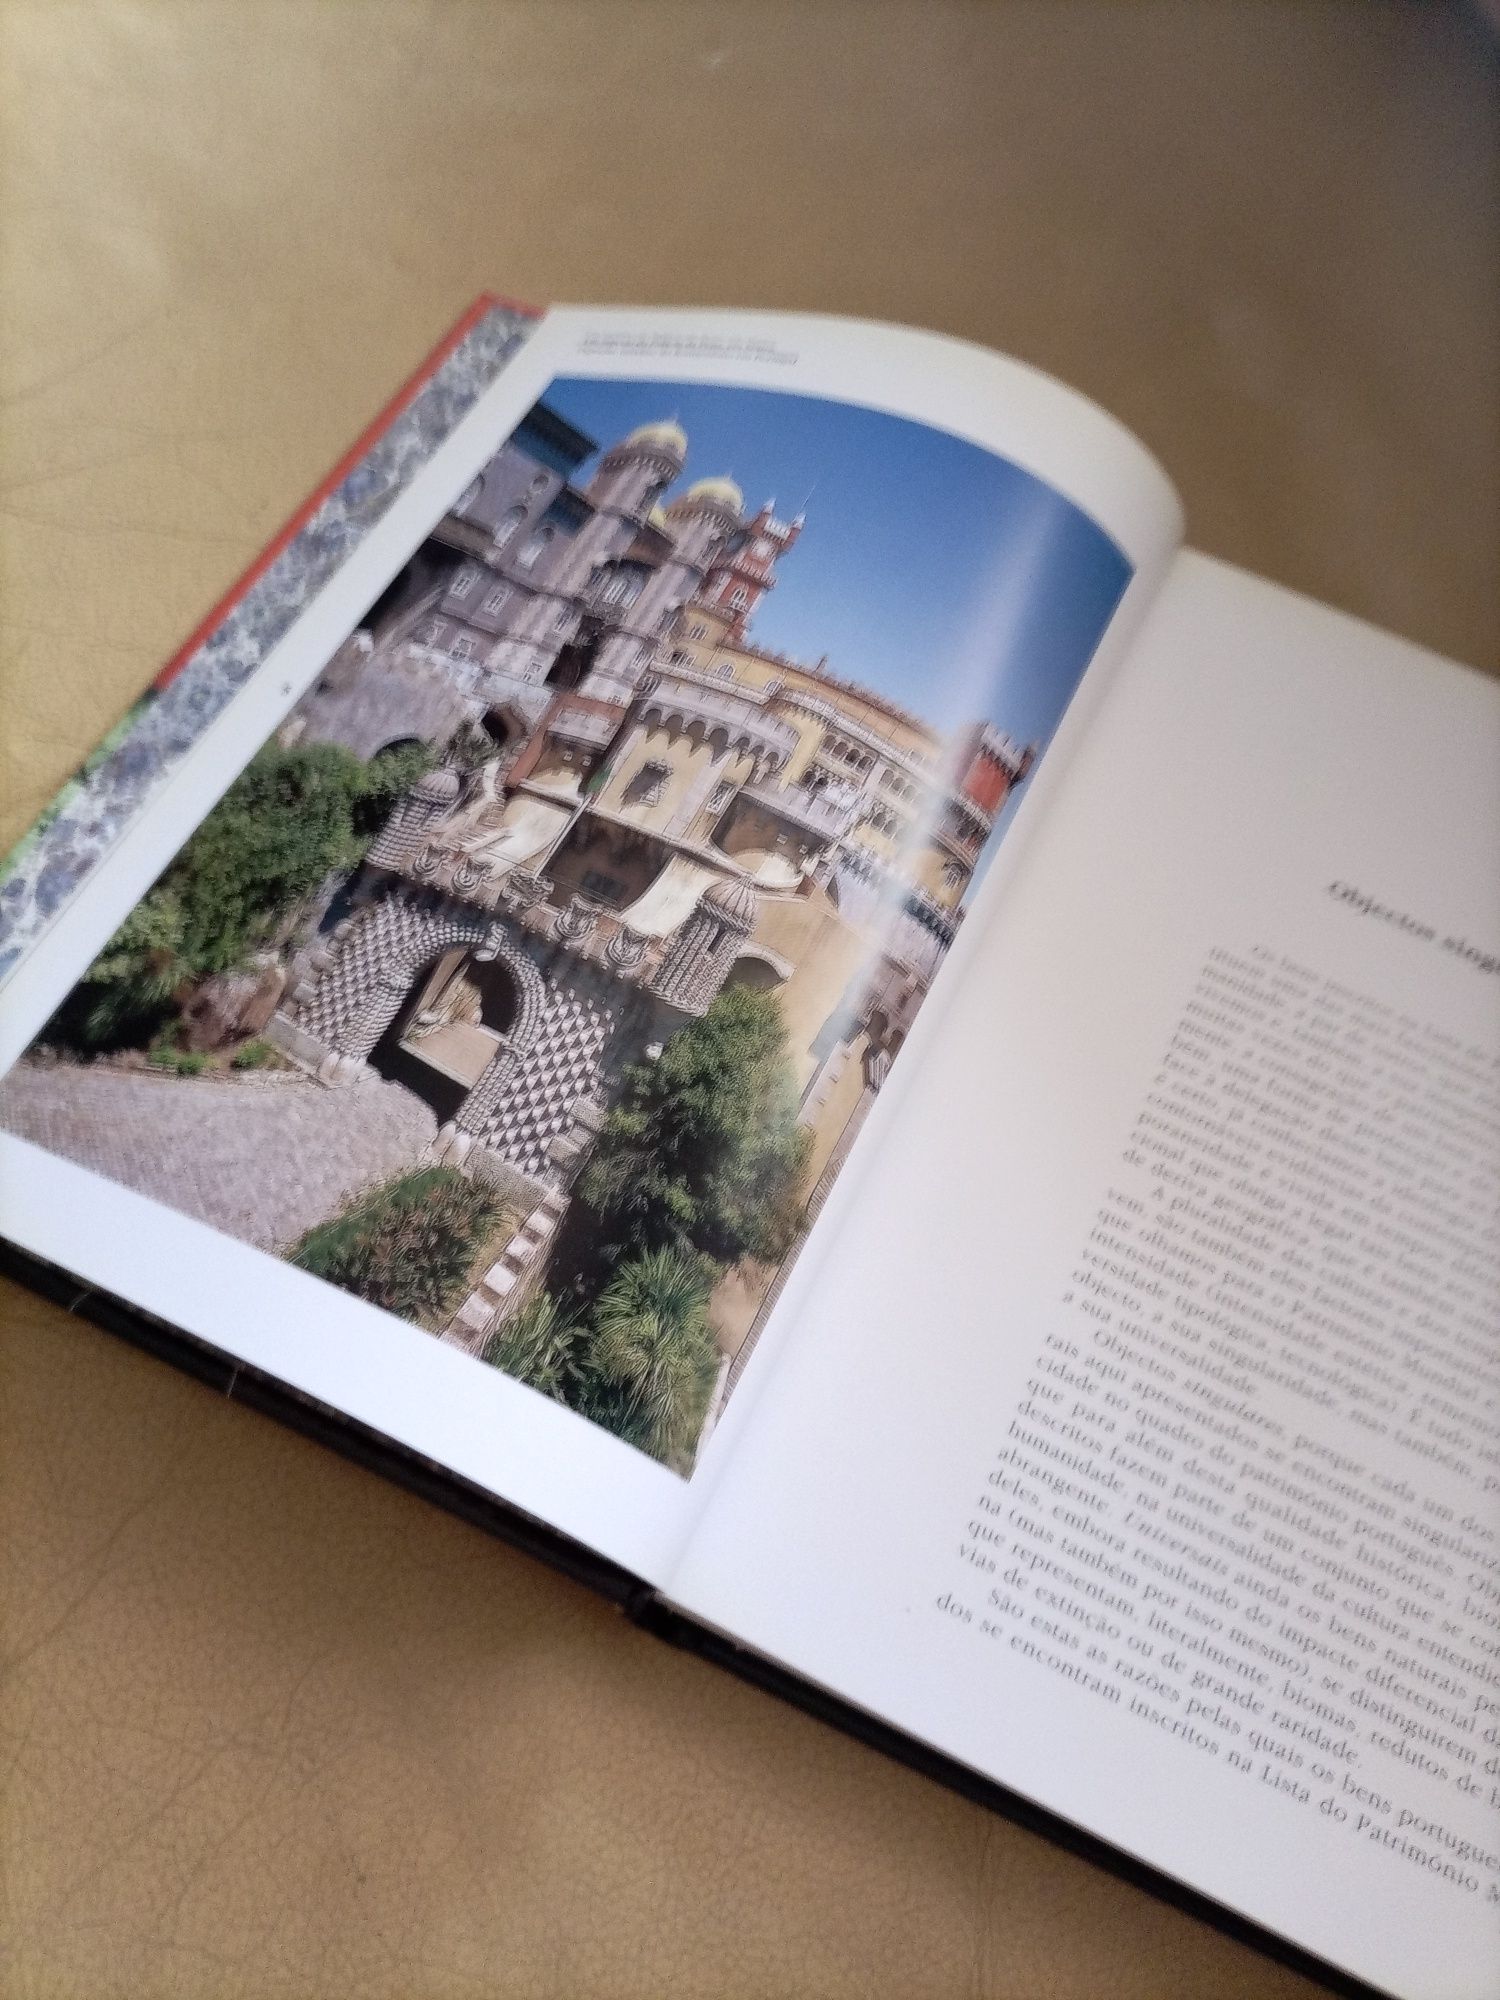 Livro "Descubra o Mundo"- Portugal Património da Humanidade